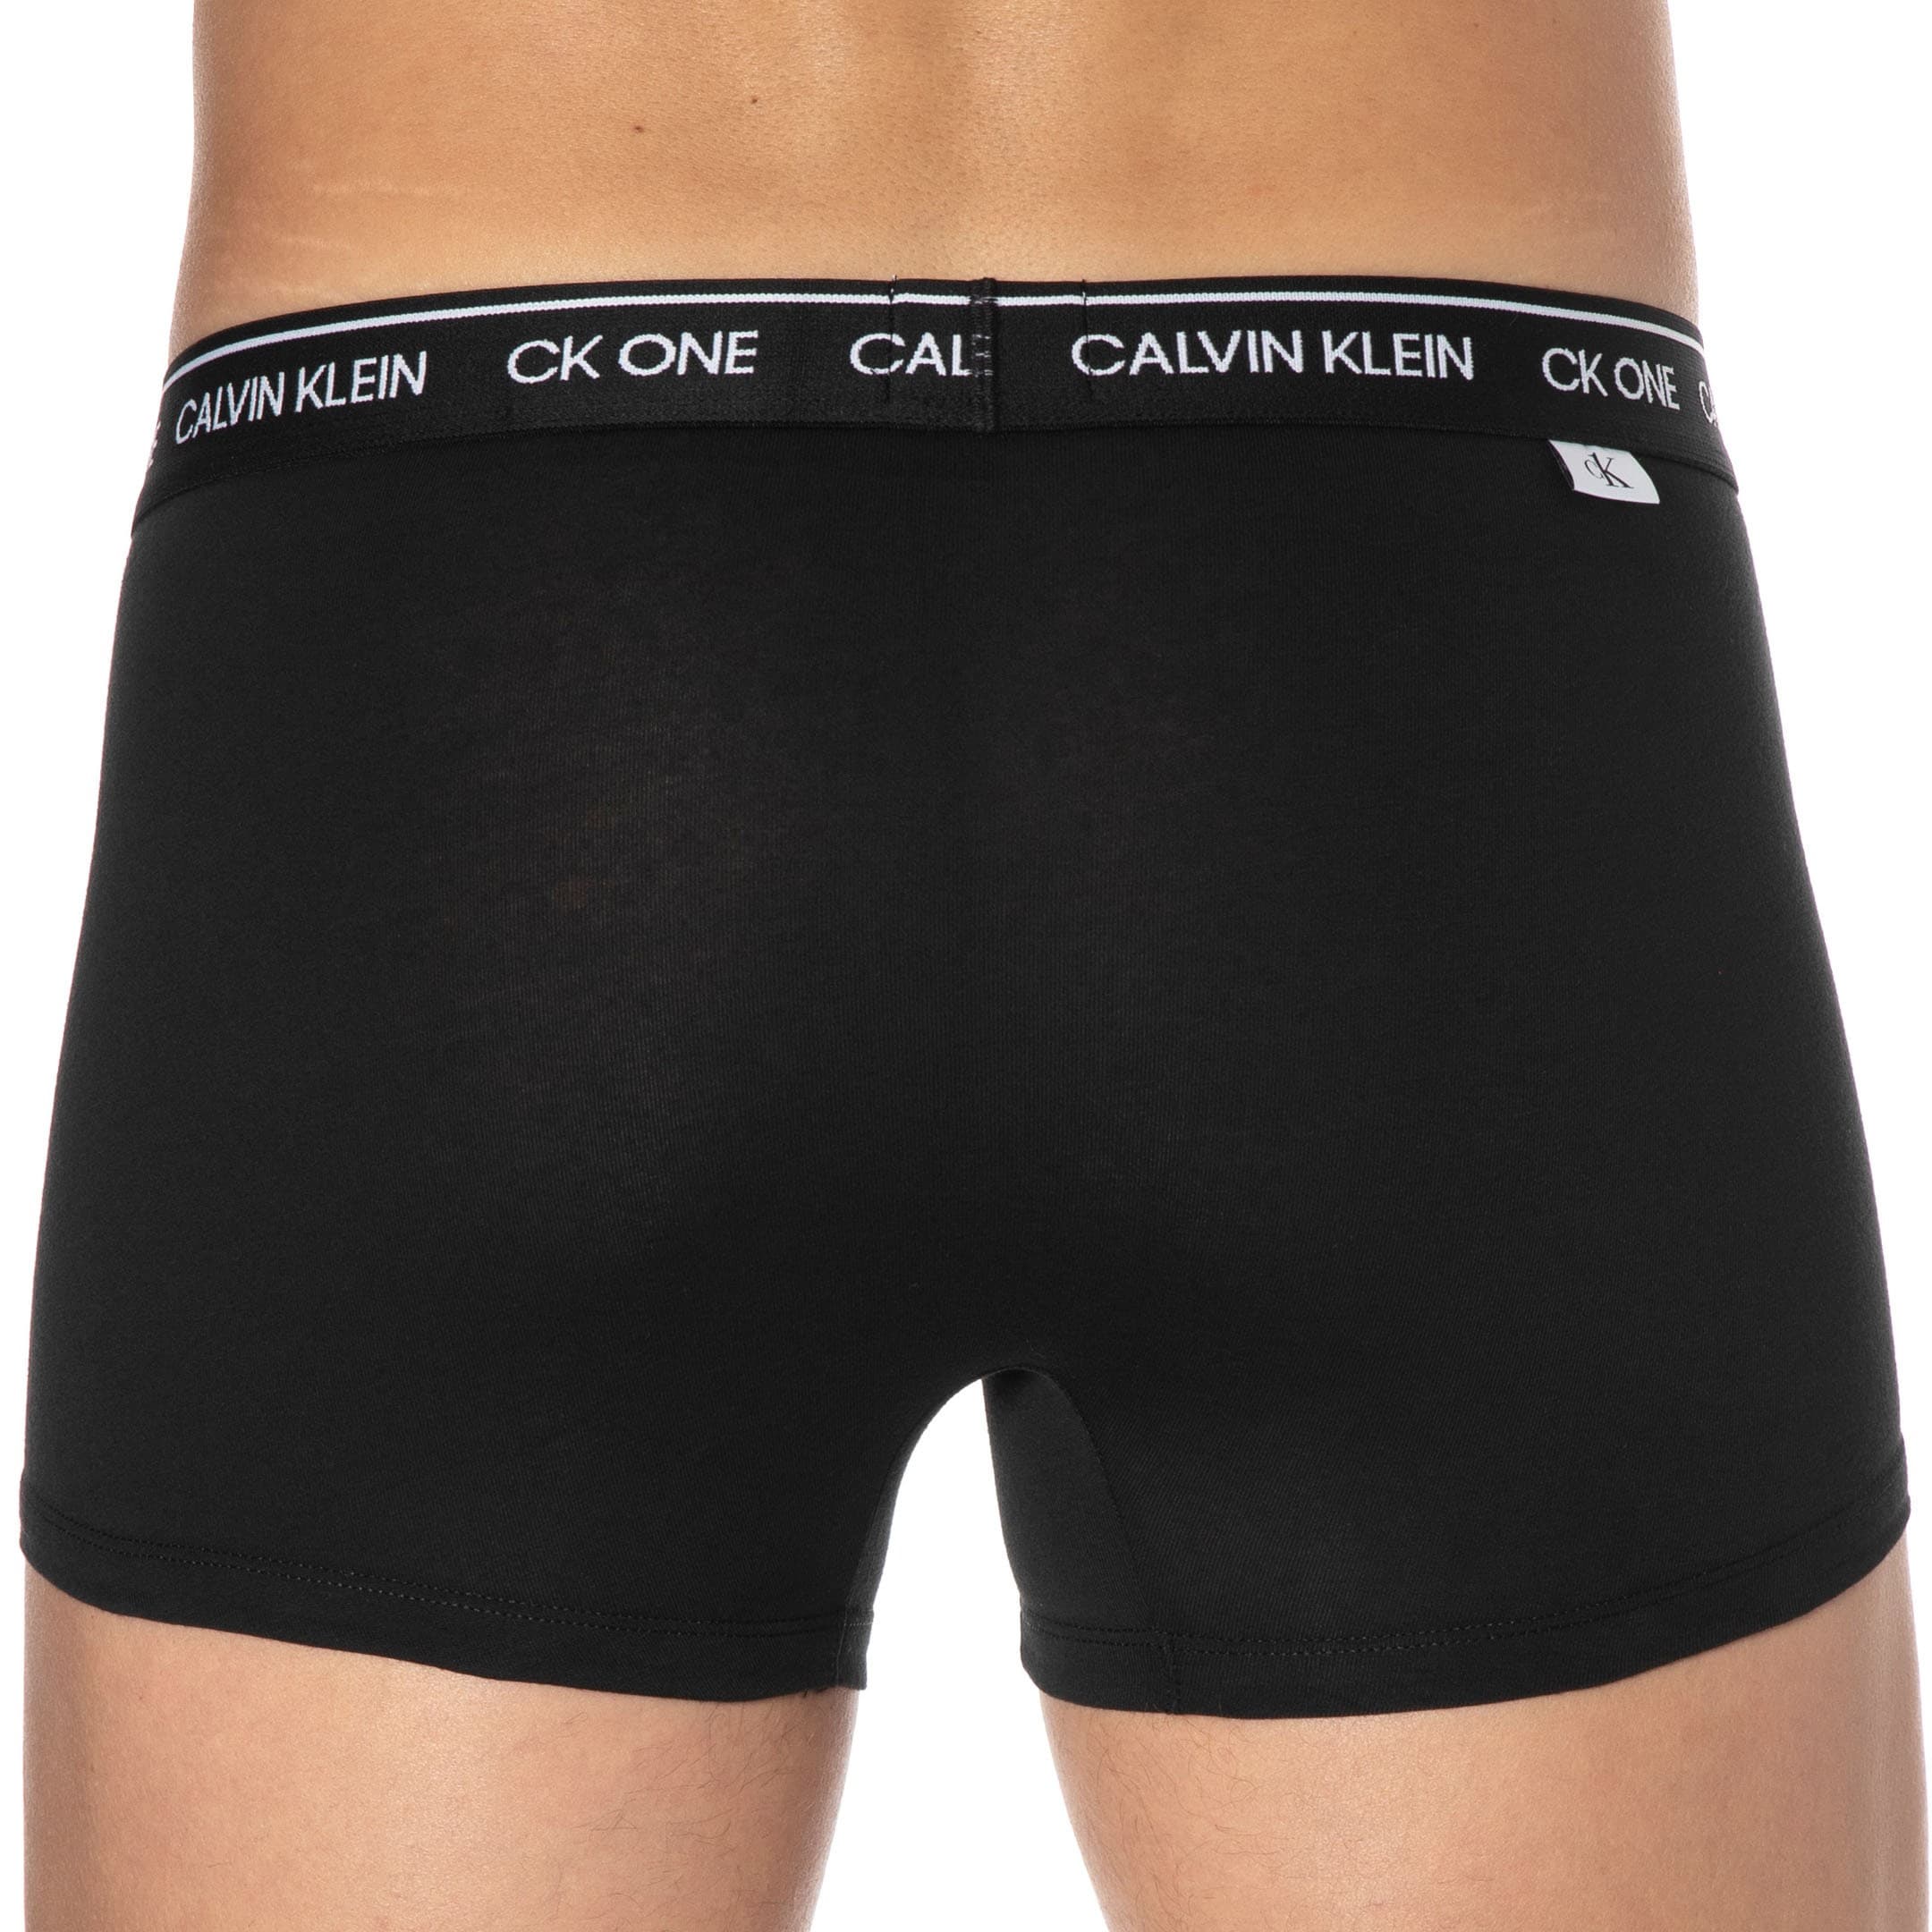 Calvin Klein Ck One Cotton Boxer Briefs - Black | INDERWEAR